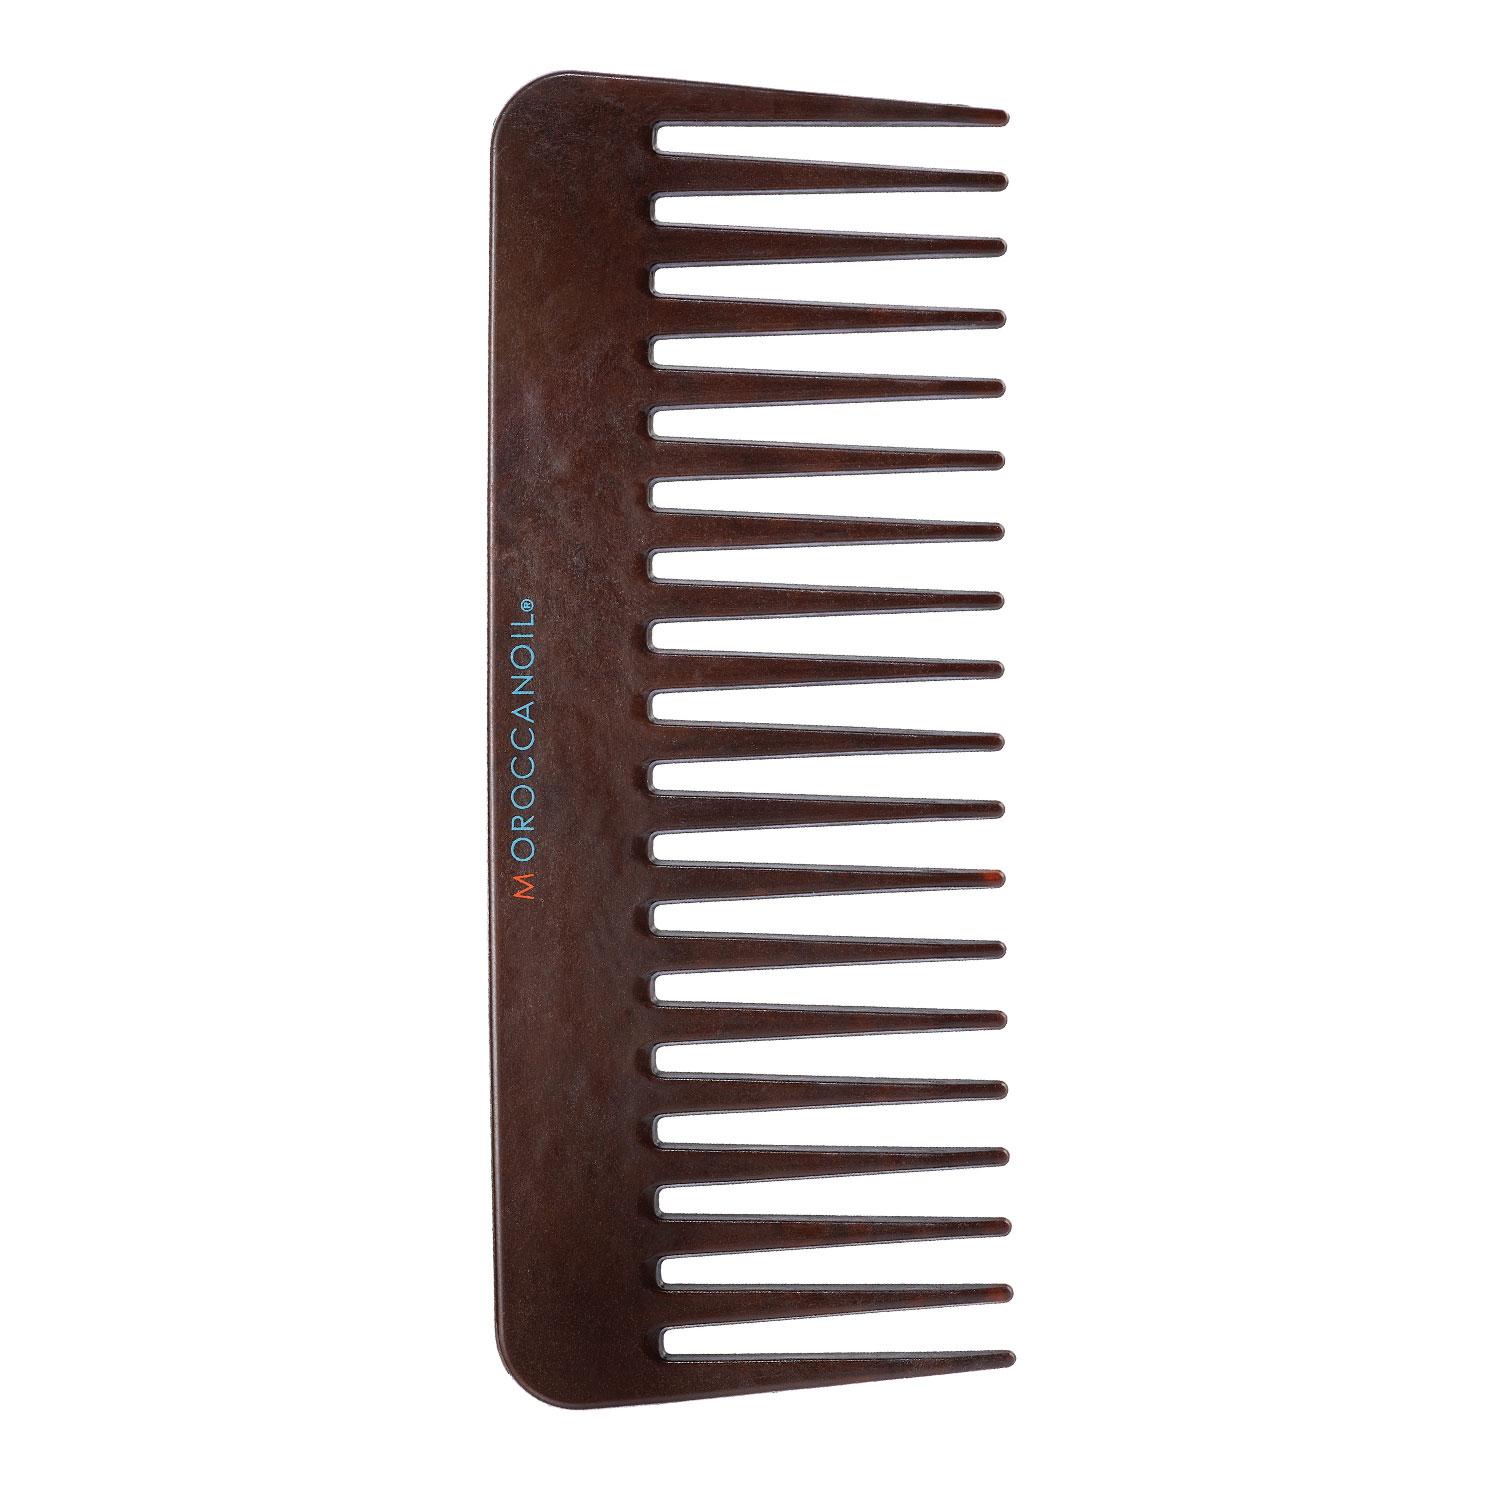 Moroccanoil - Detangling Comb